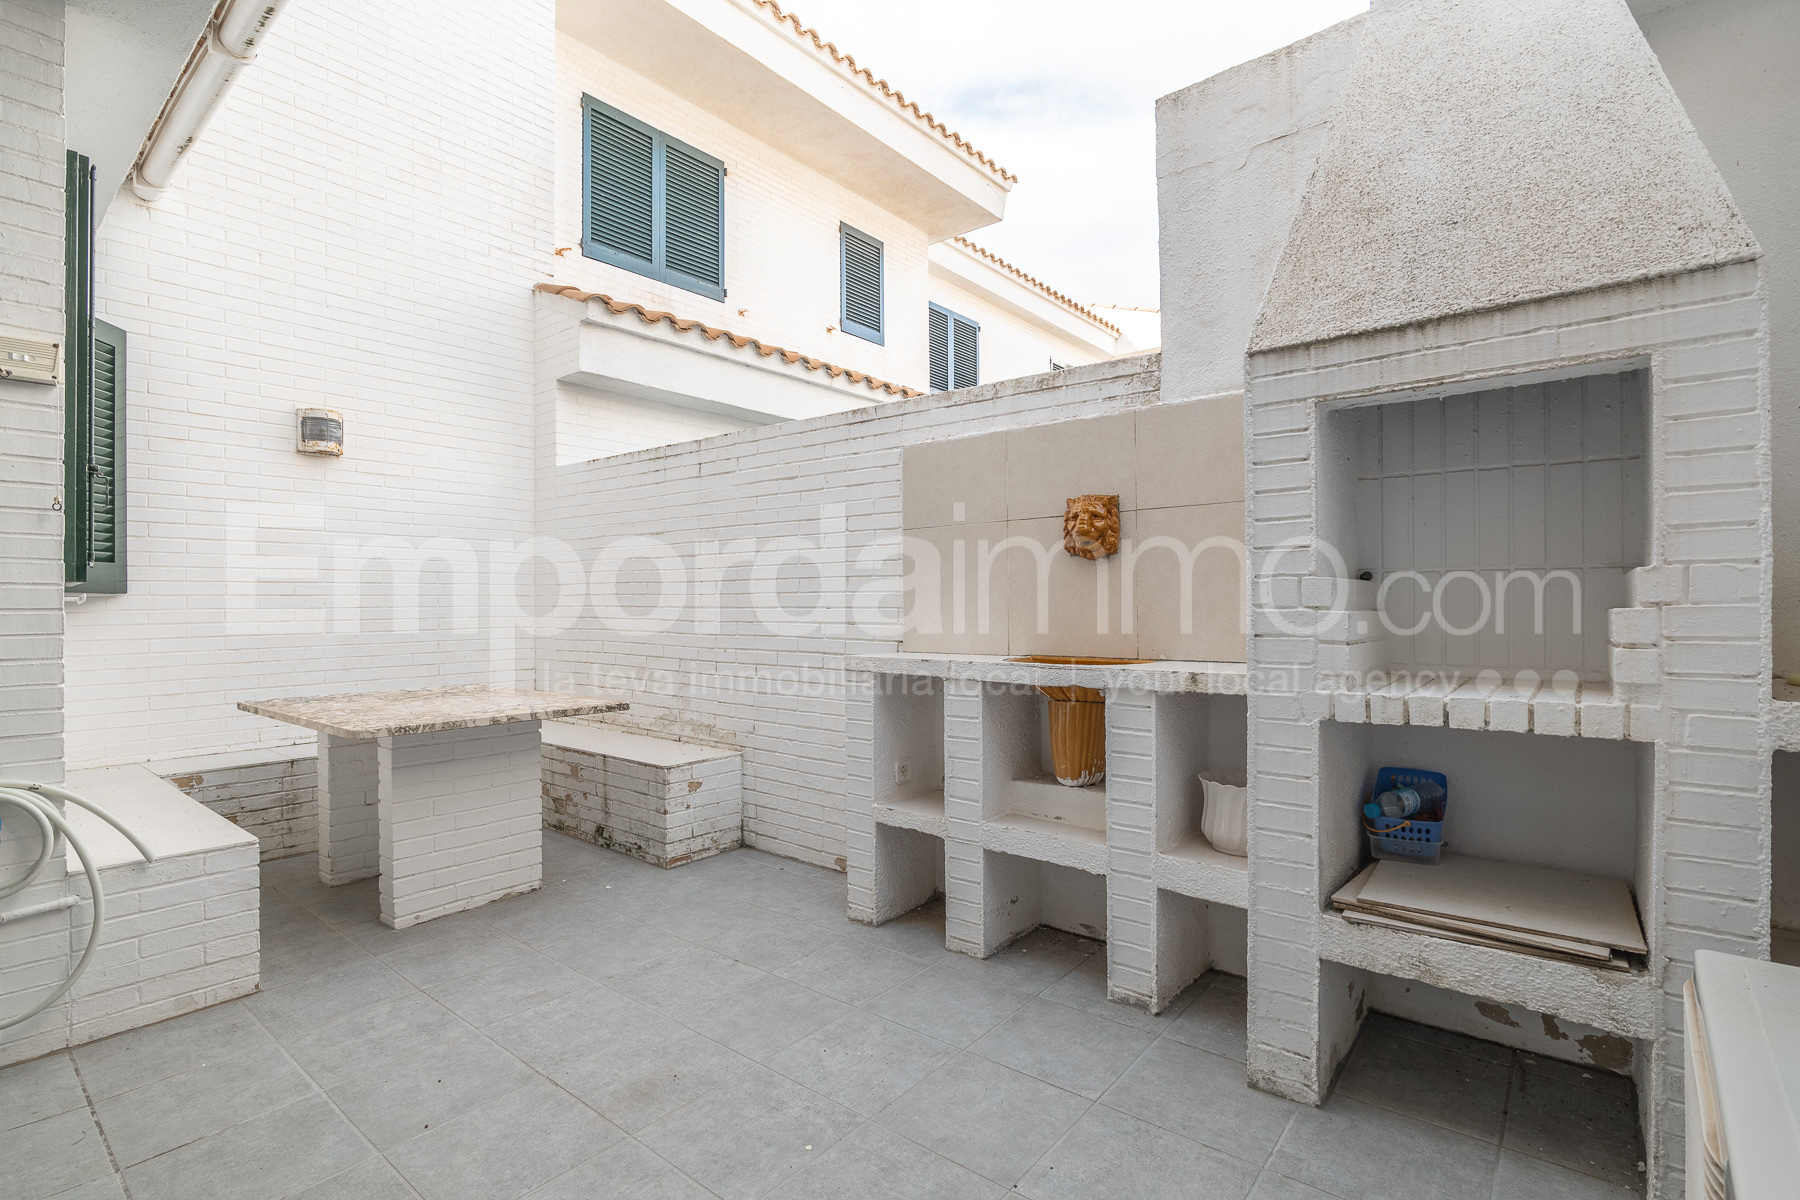 Casa primera linea en venta en Creixell, Tarragona